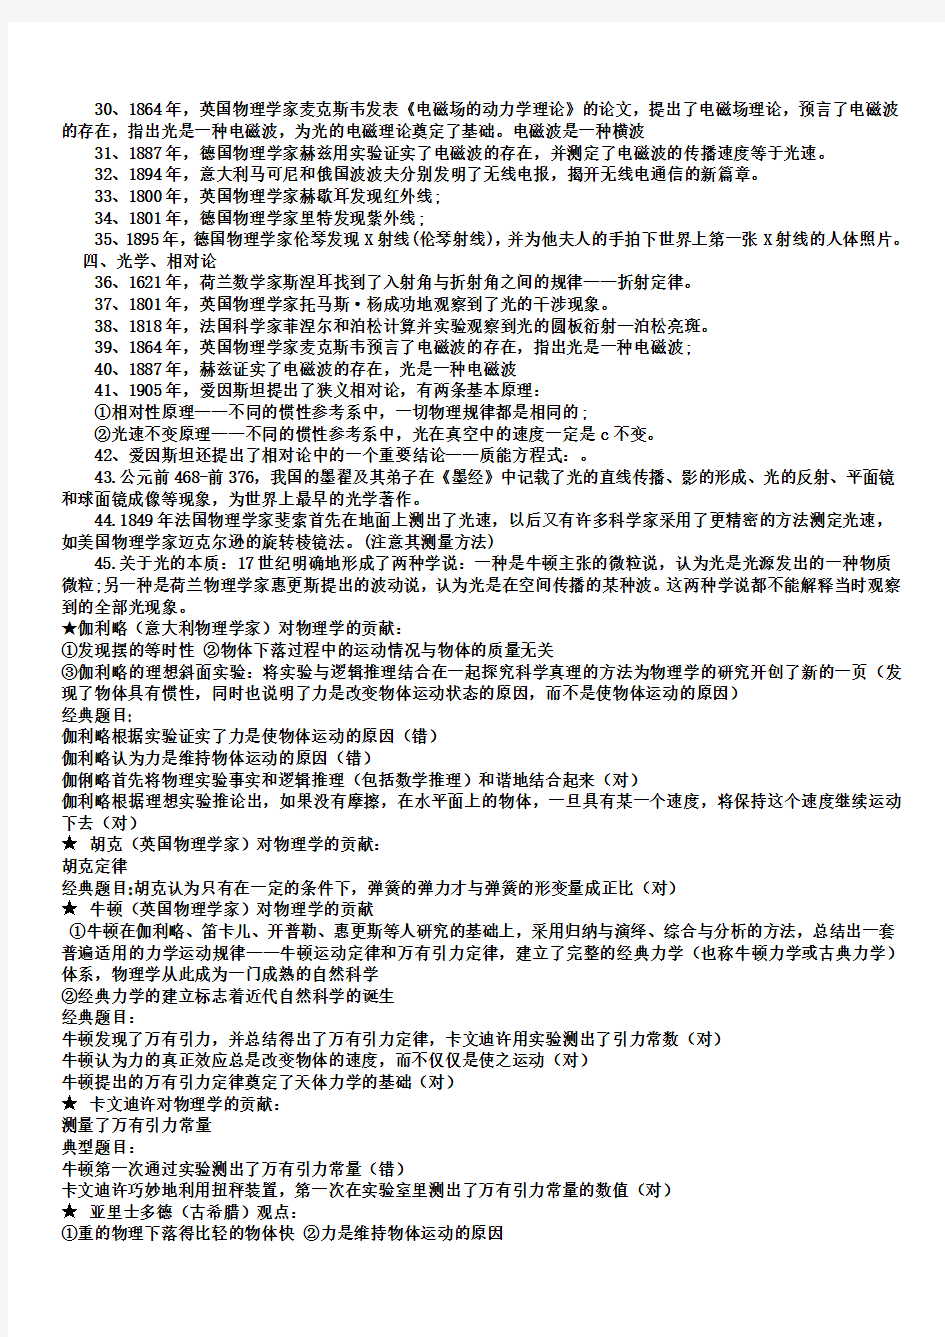 绵阳东辰国际学校三轮复习资料科学家及物理学史专题(2014-4-16)